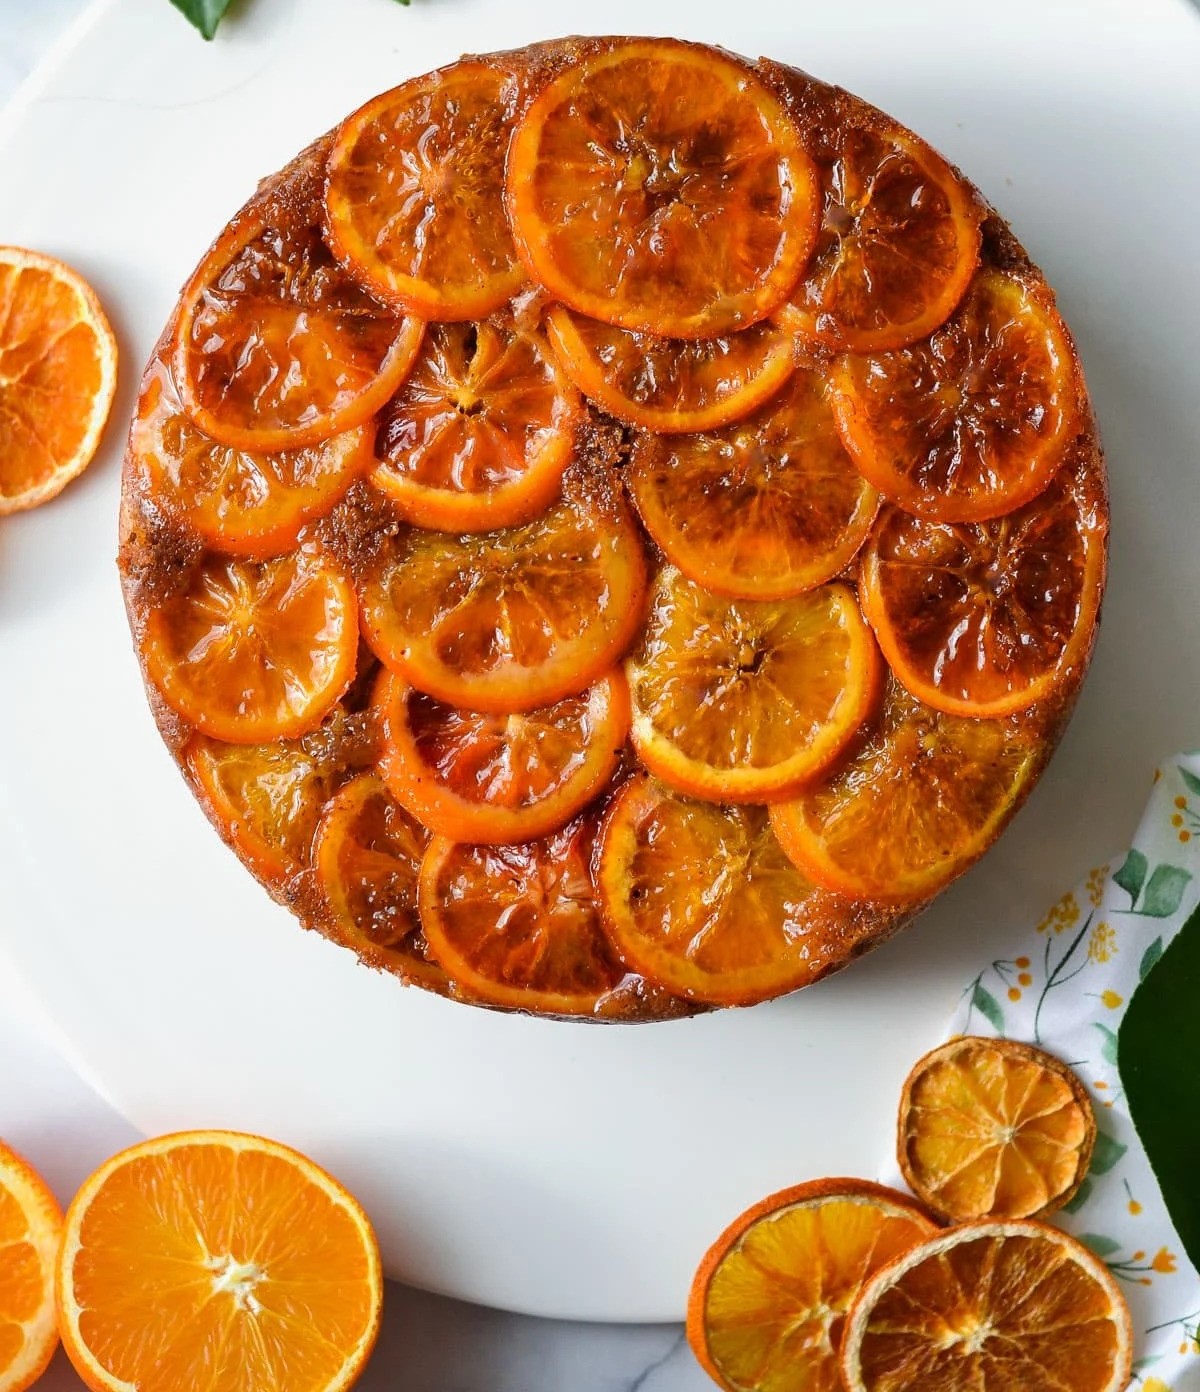 طرز تهیه کیک پرتقالی برگردان/یک کیک خوشمزه و جذاب!